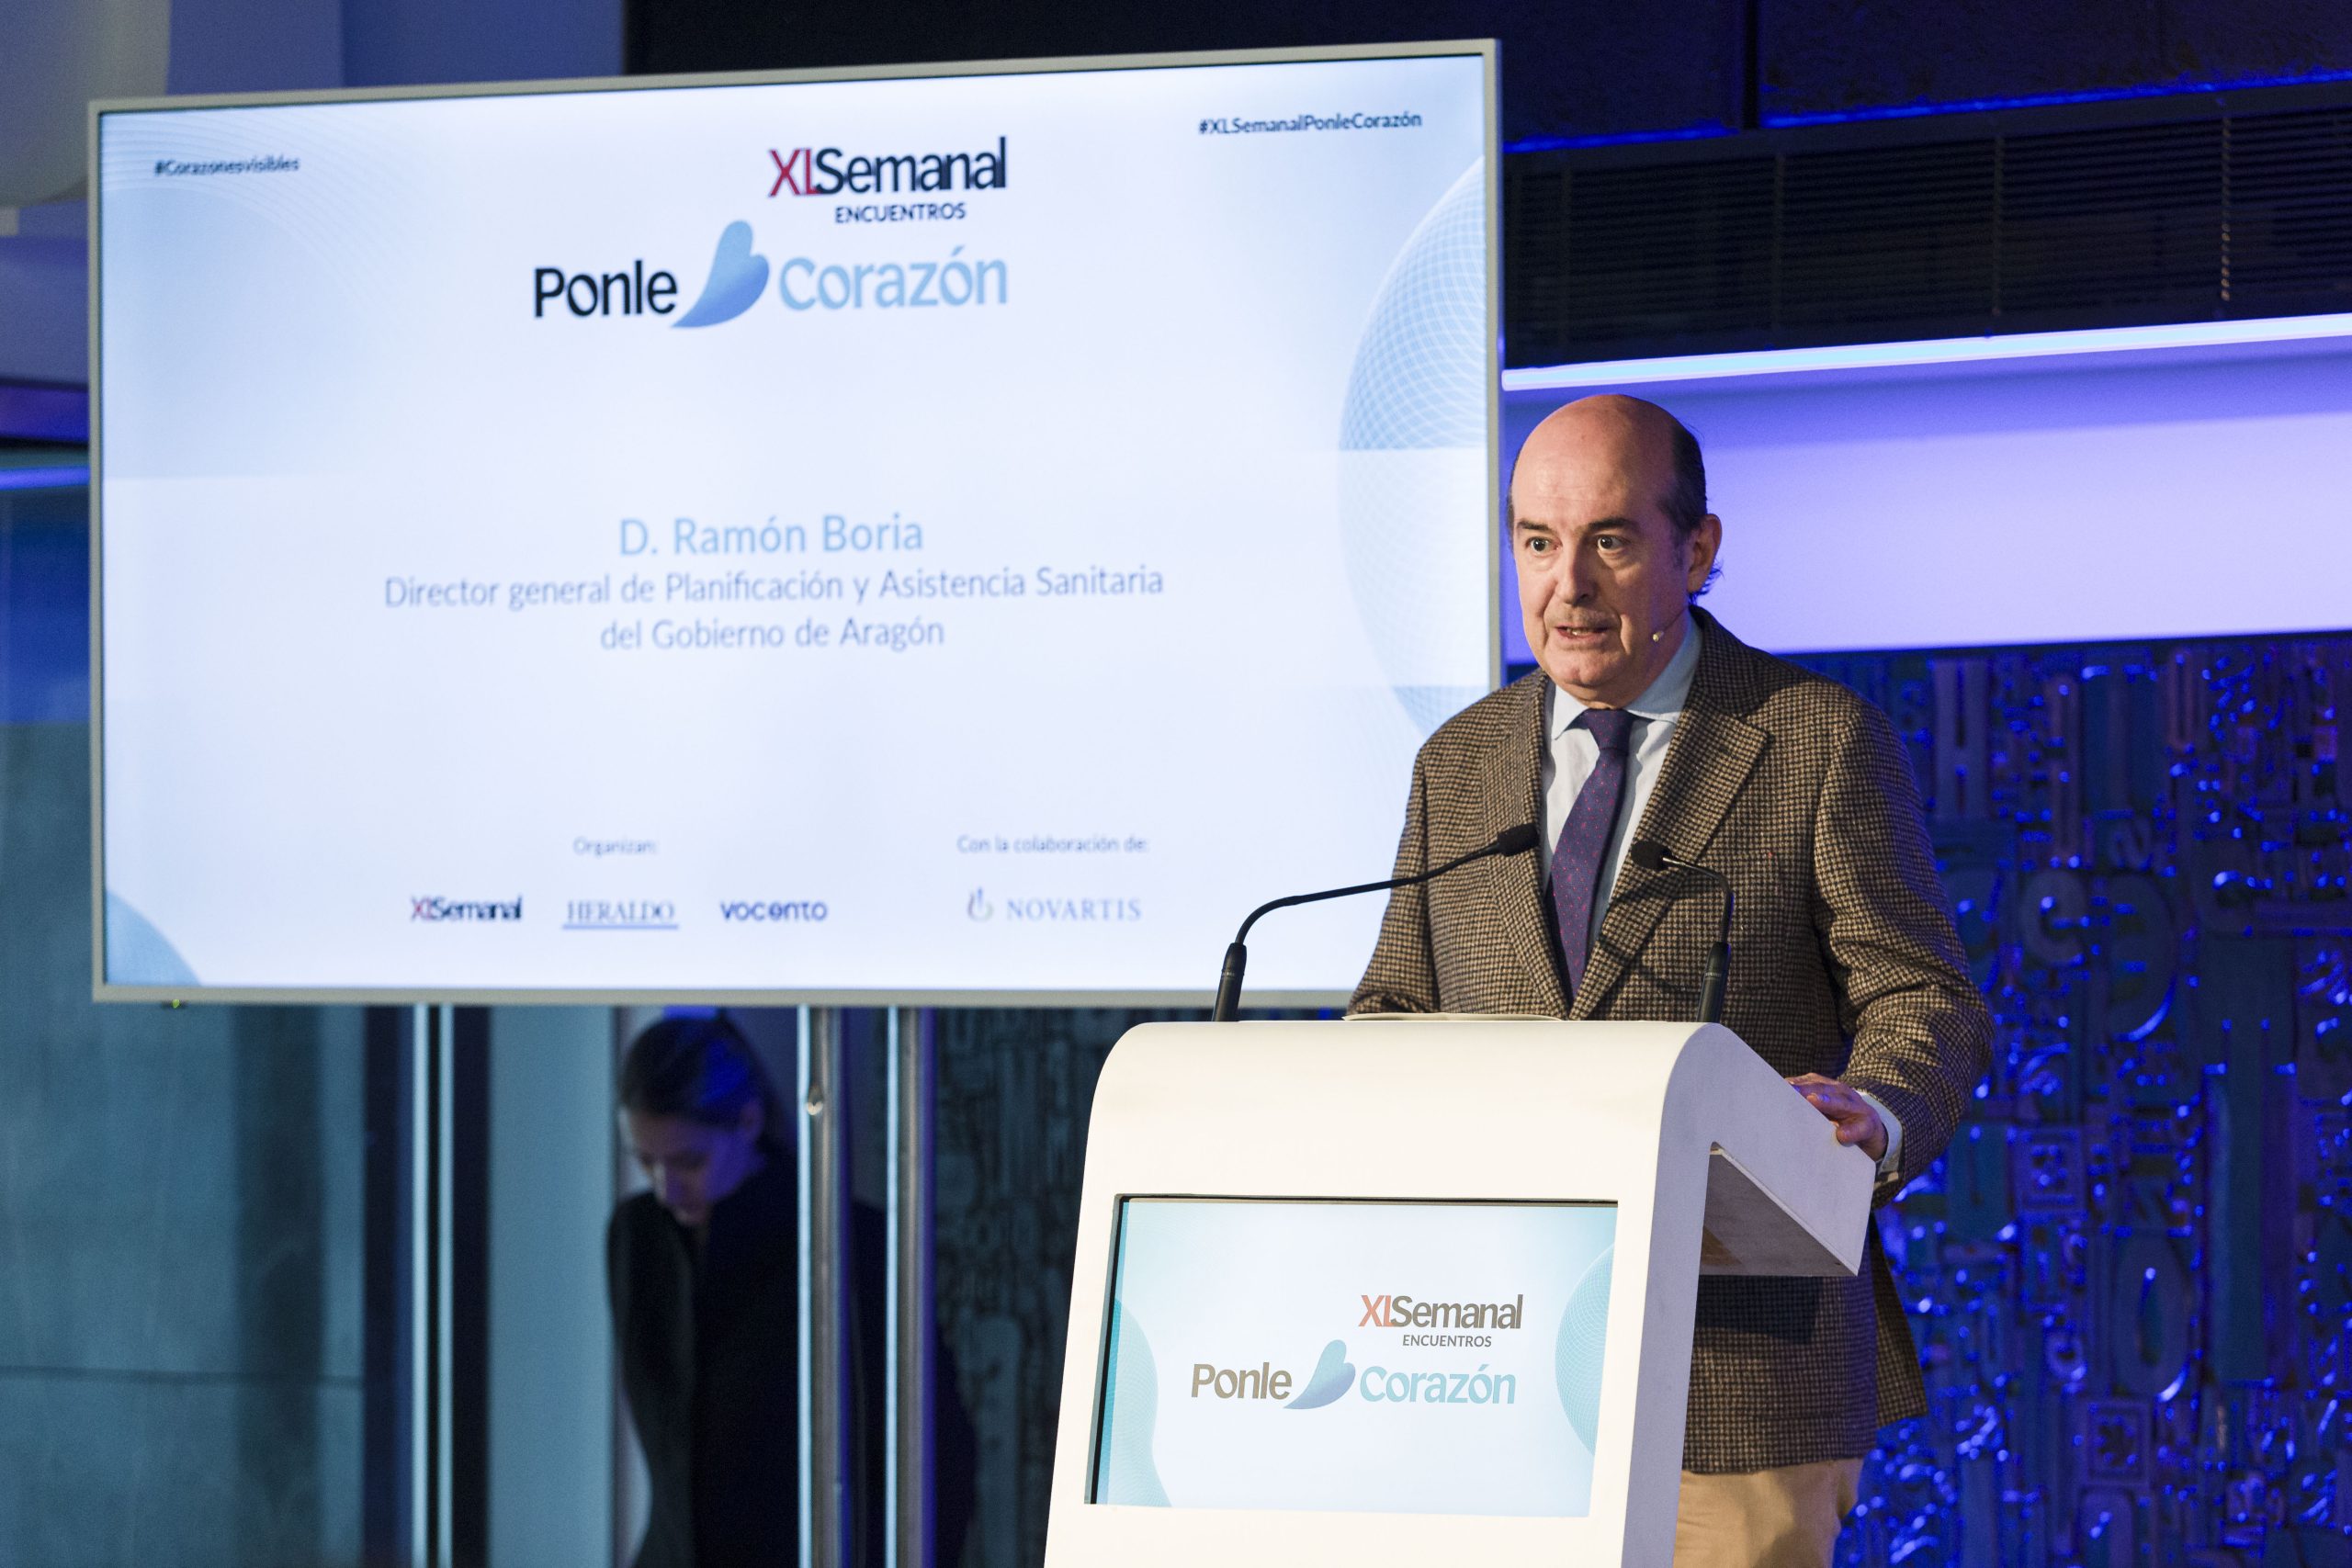 Ramón Boria, Director General de Planificación y Asistencia Sanitaria del Gobierno de Aragón